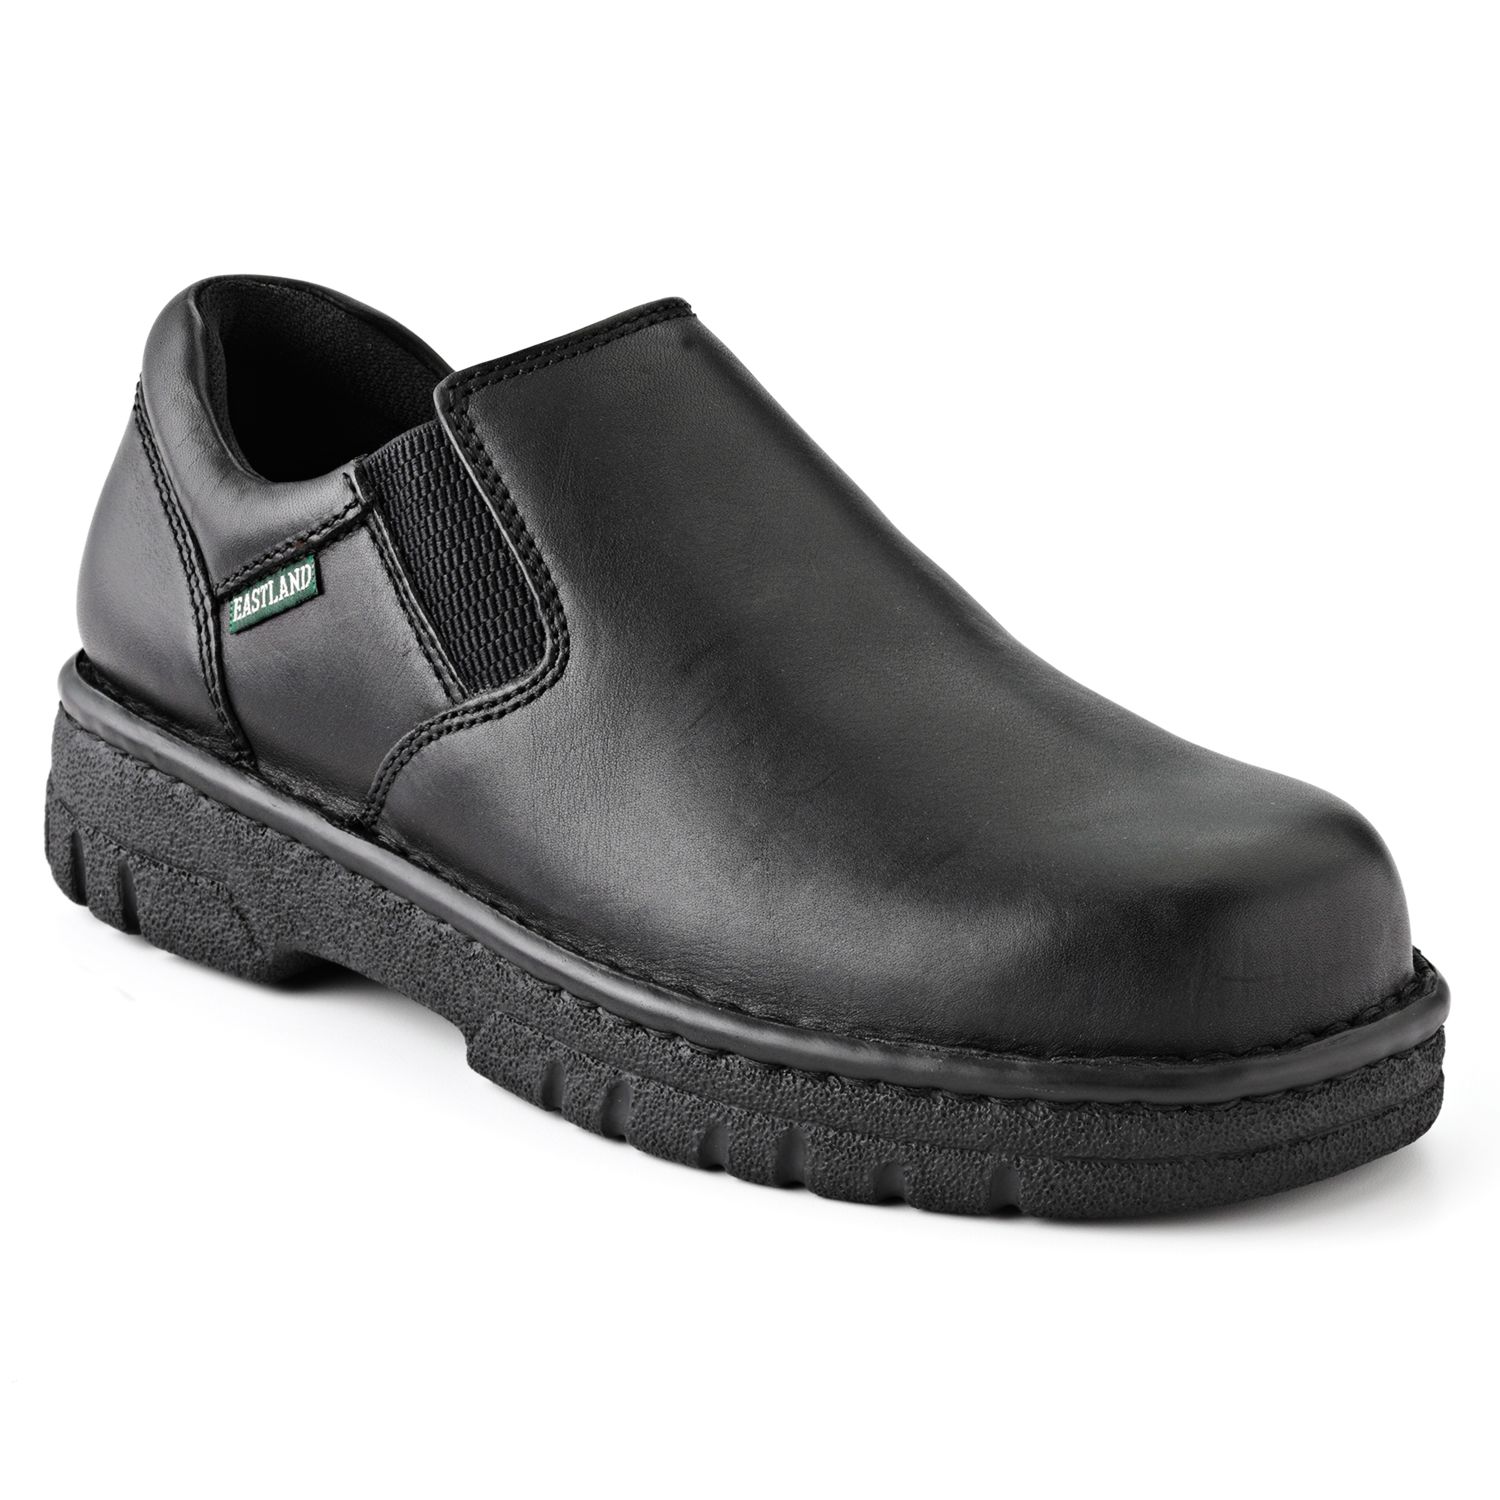 kohls black slip on shoes